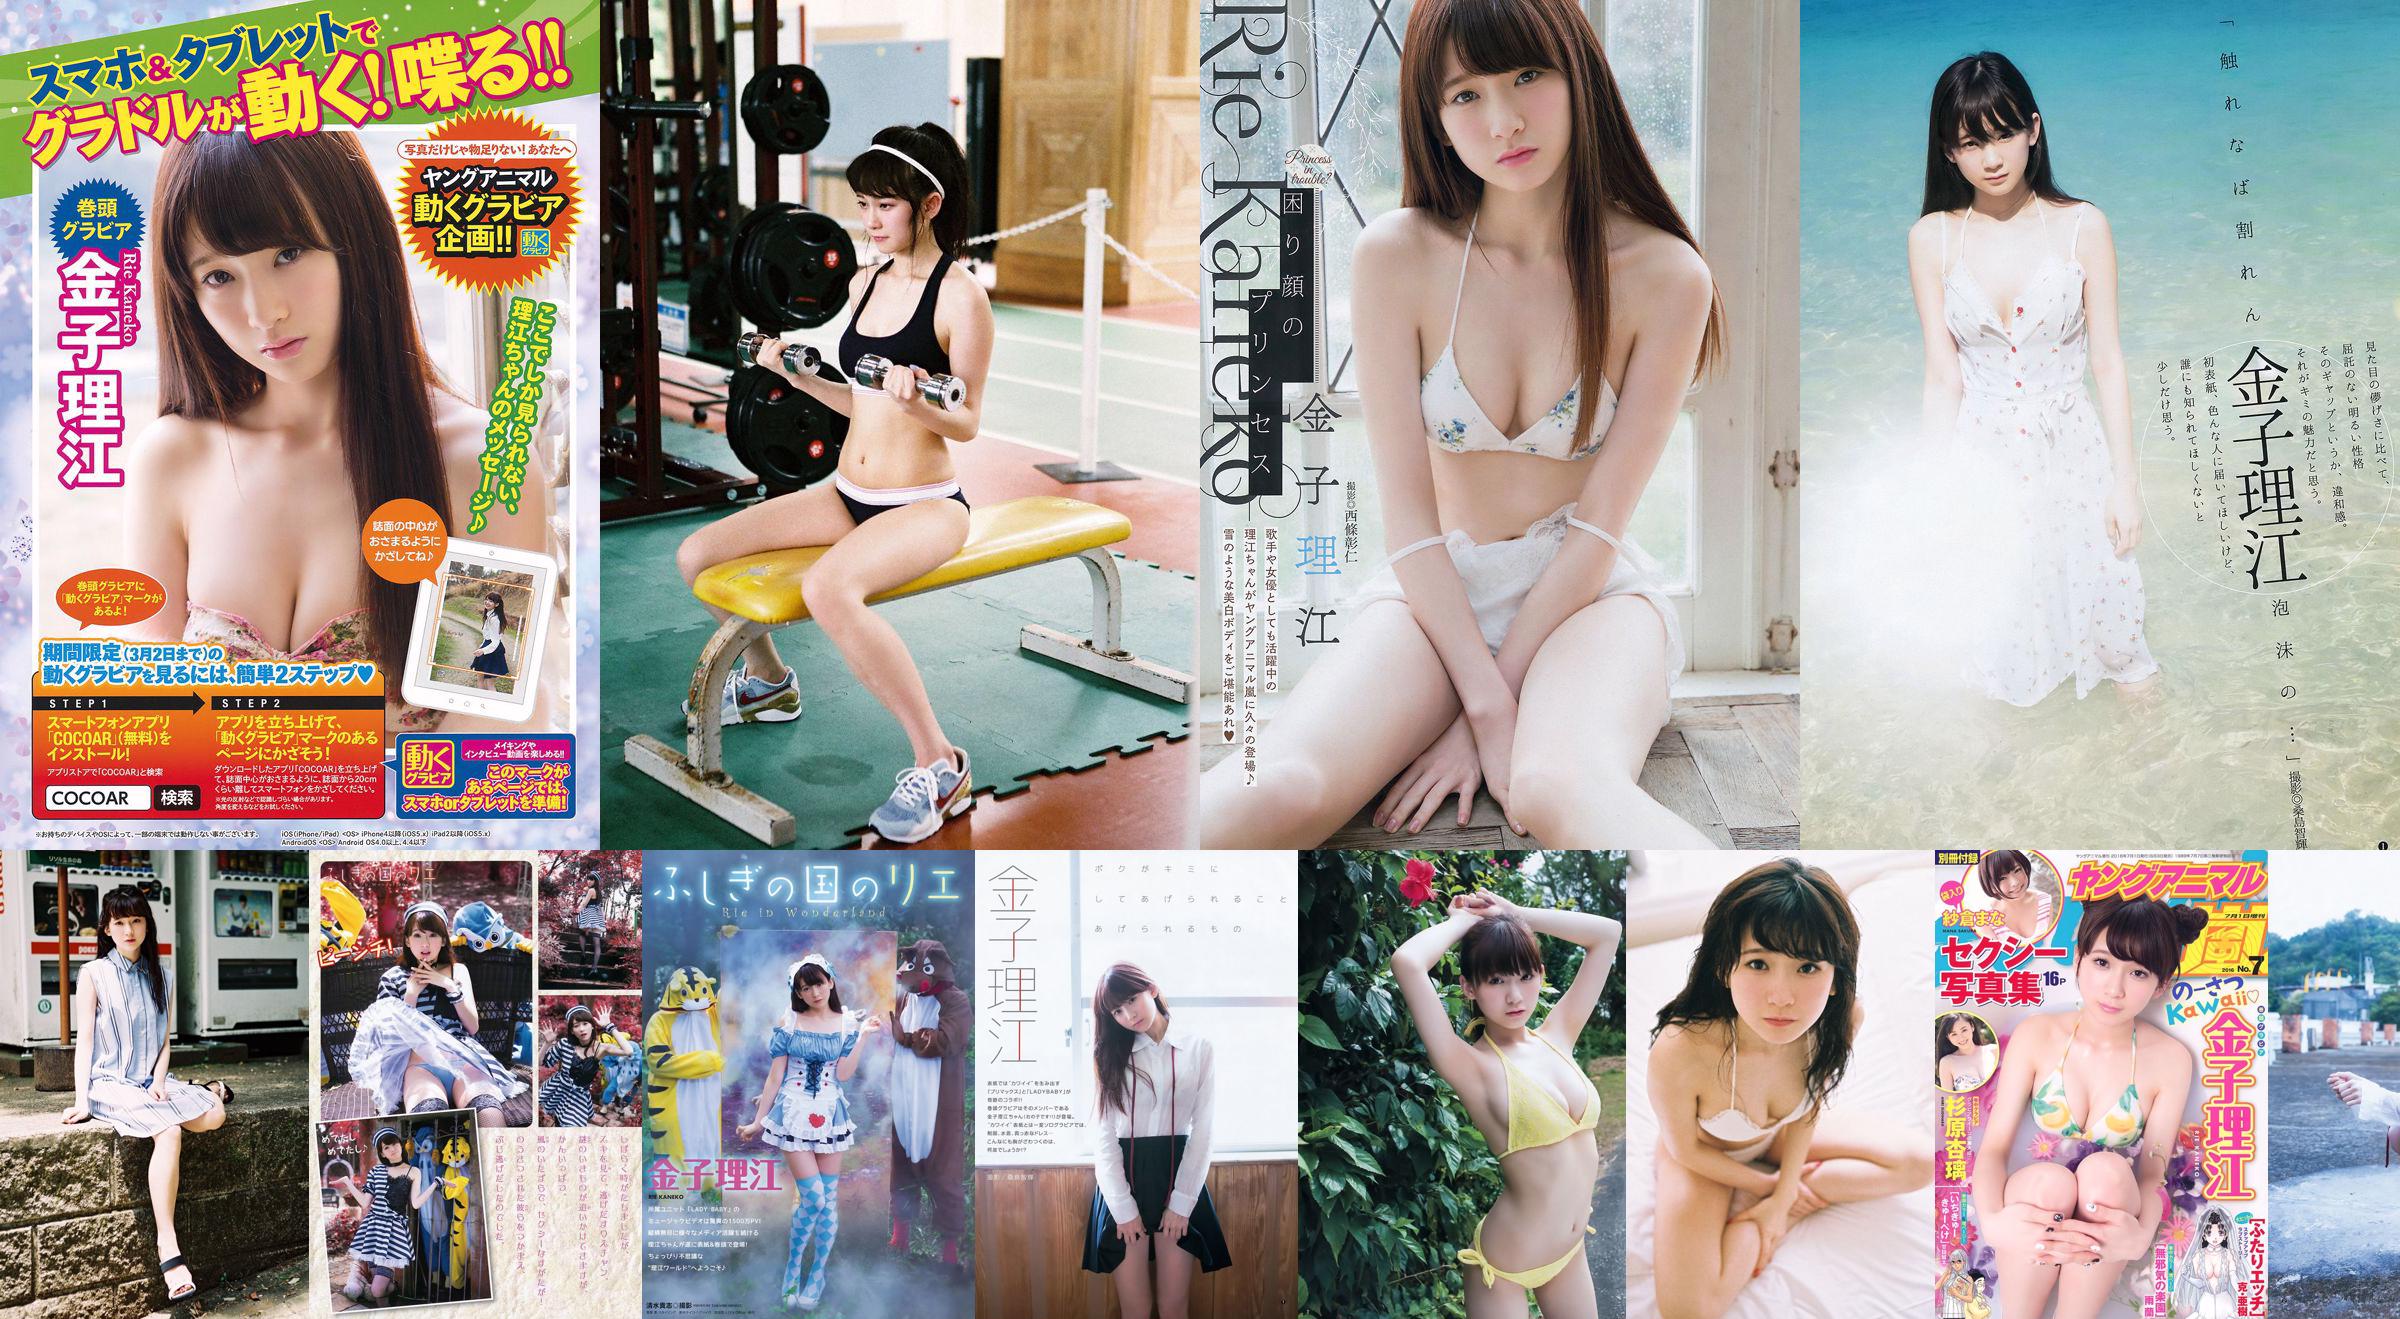 Rie Kaneko, Anri Sugihara, Sakura まな [Young Animal Arashi Special Issue] No.07 2016 Photo Magazine No.d5443c Page 4